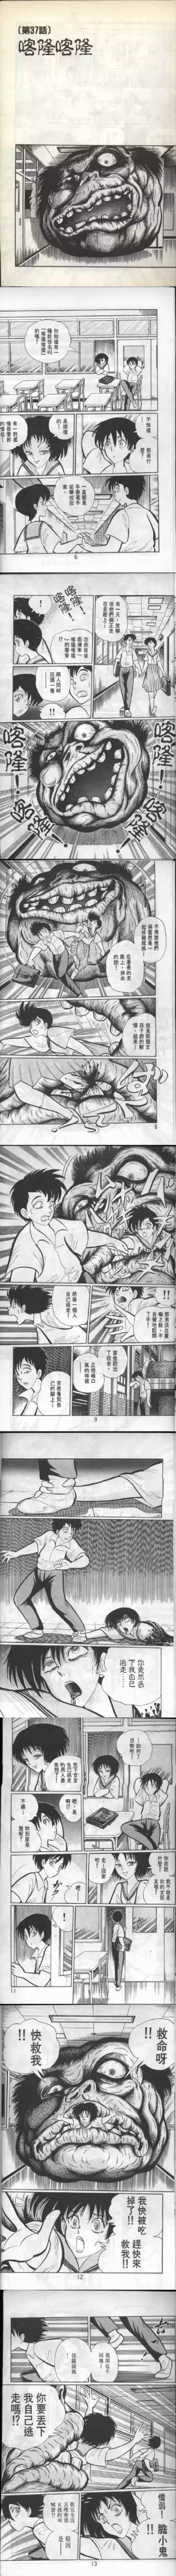 日本学校怪谈恐怖《隐藏物》-黑白漫话